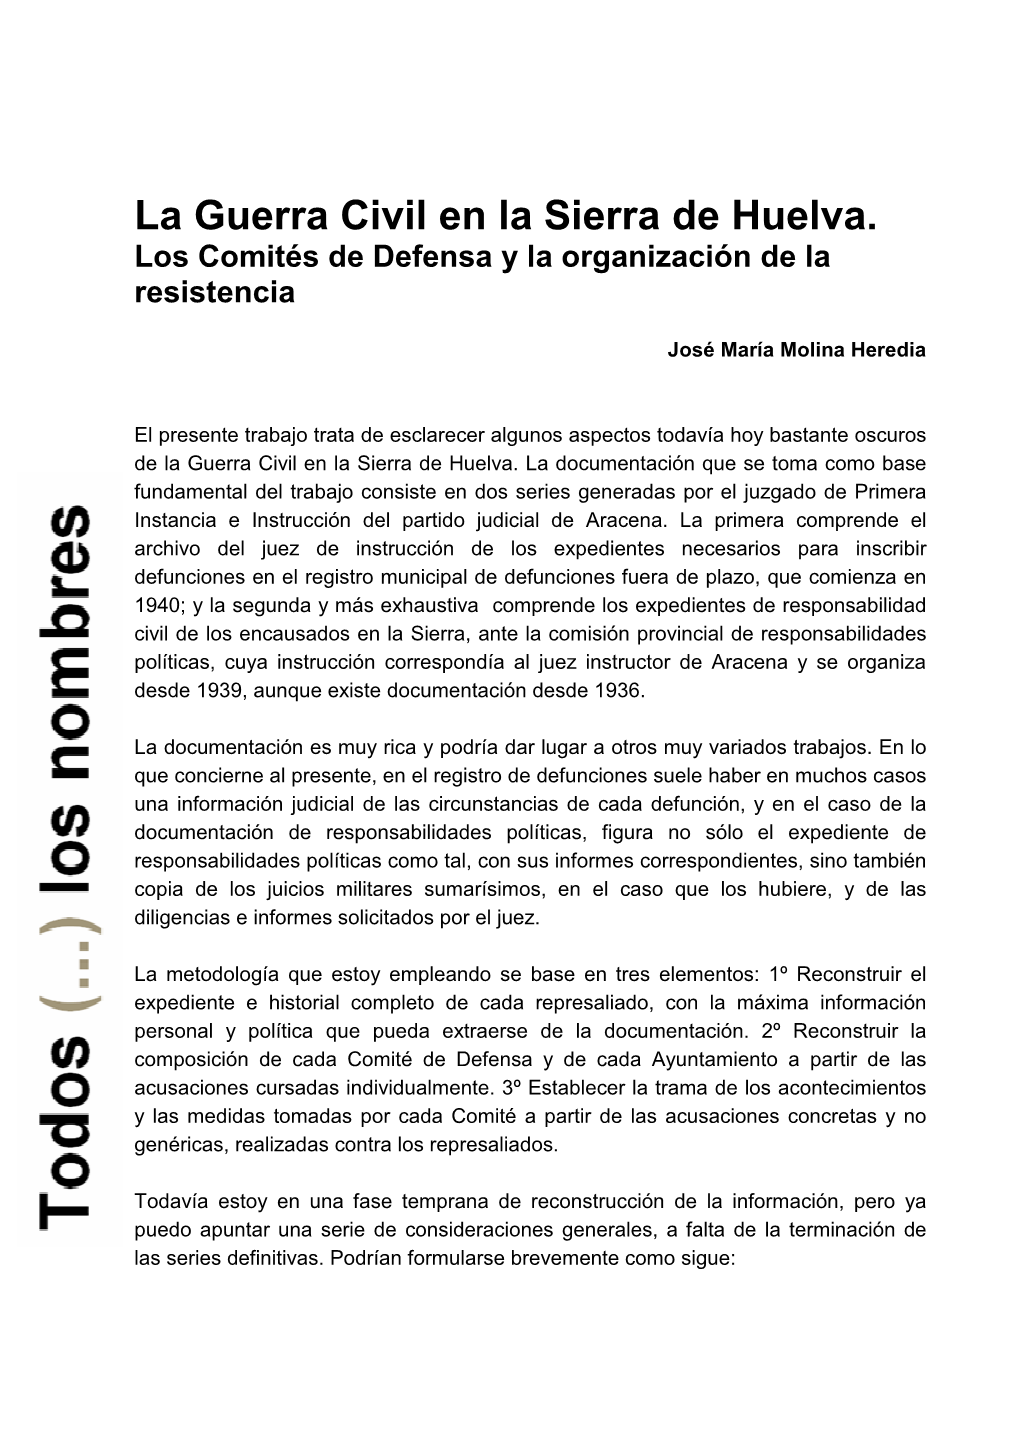 La Guerra Civil En La Sierra De Huelva. Los Comités De Defensa Y La Organización De La Resistencia